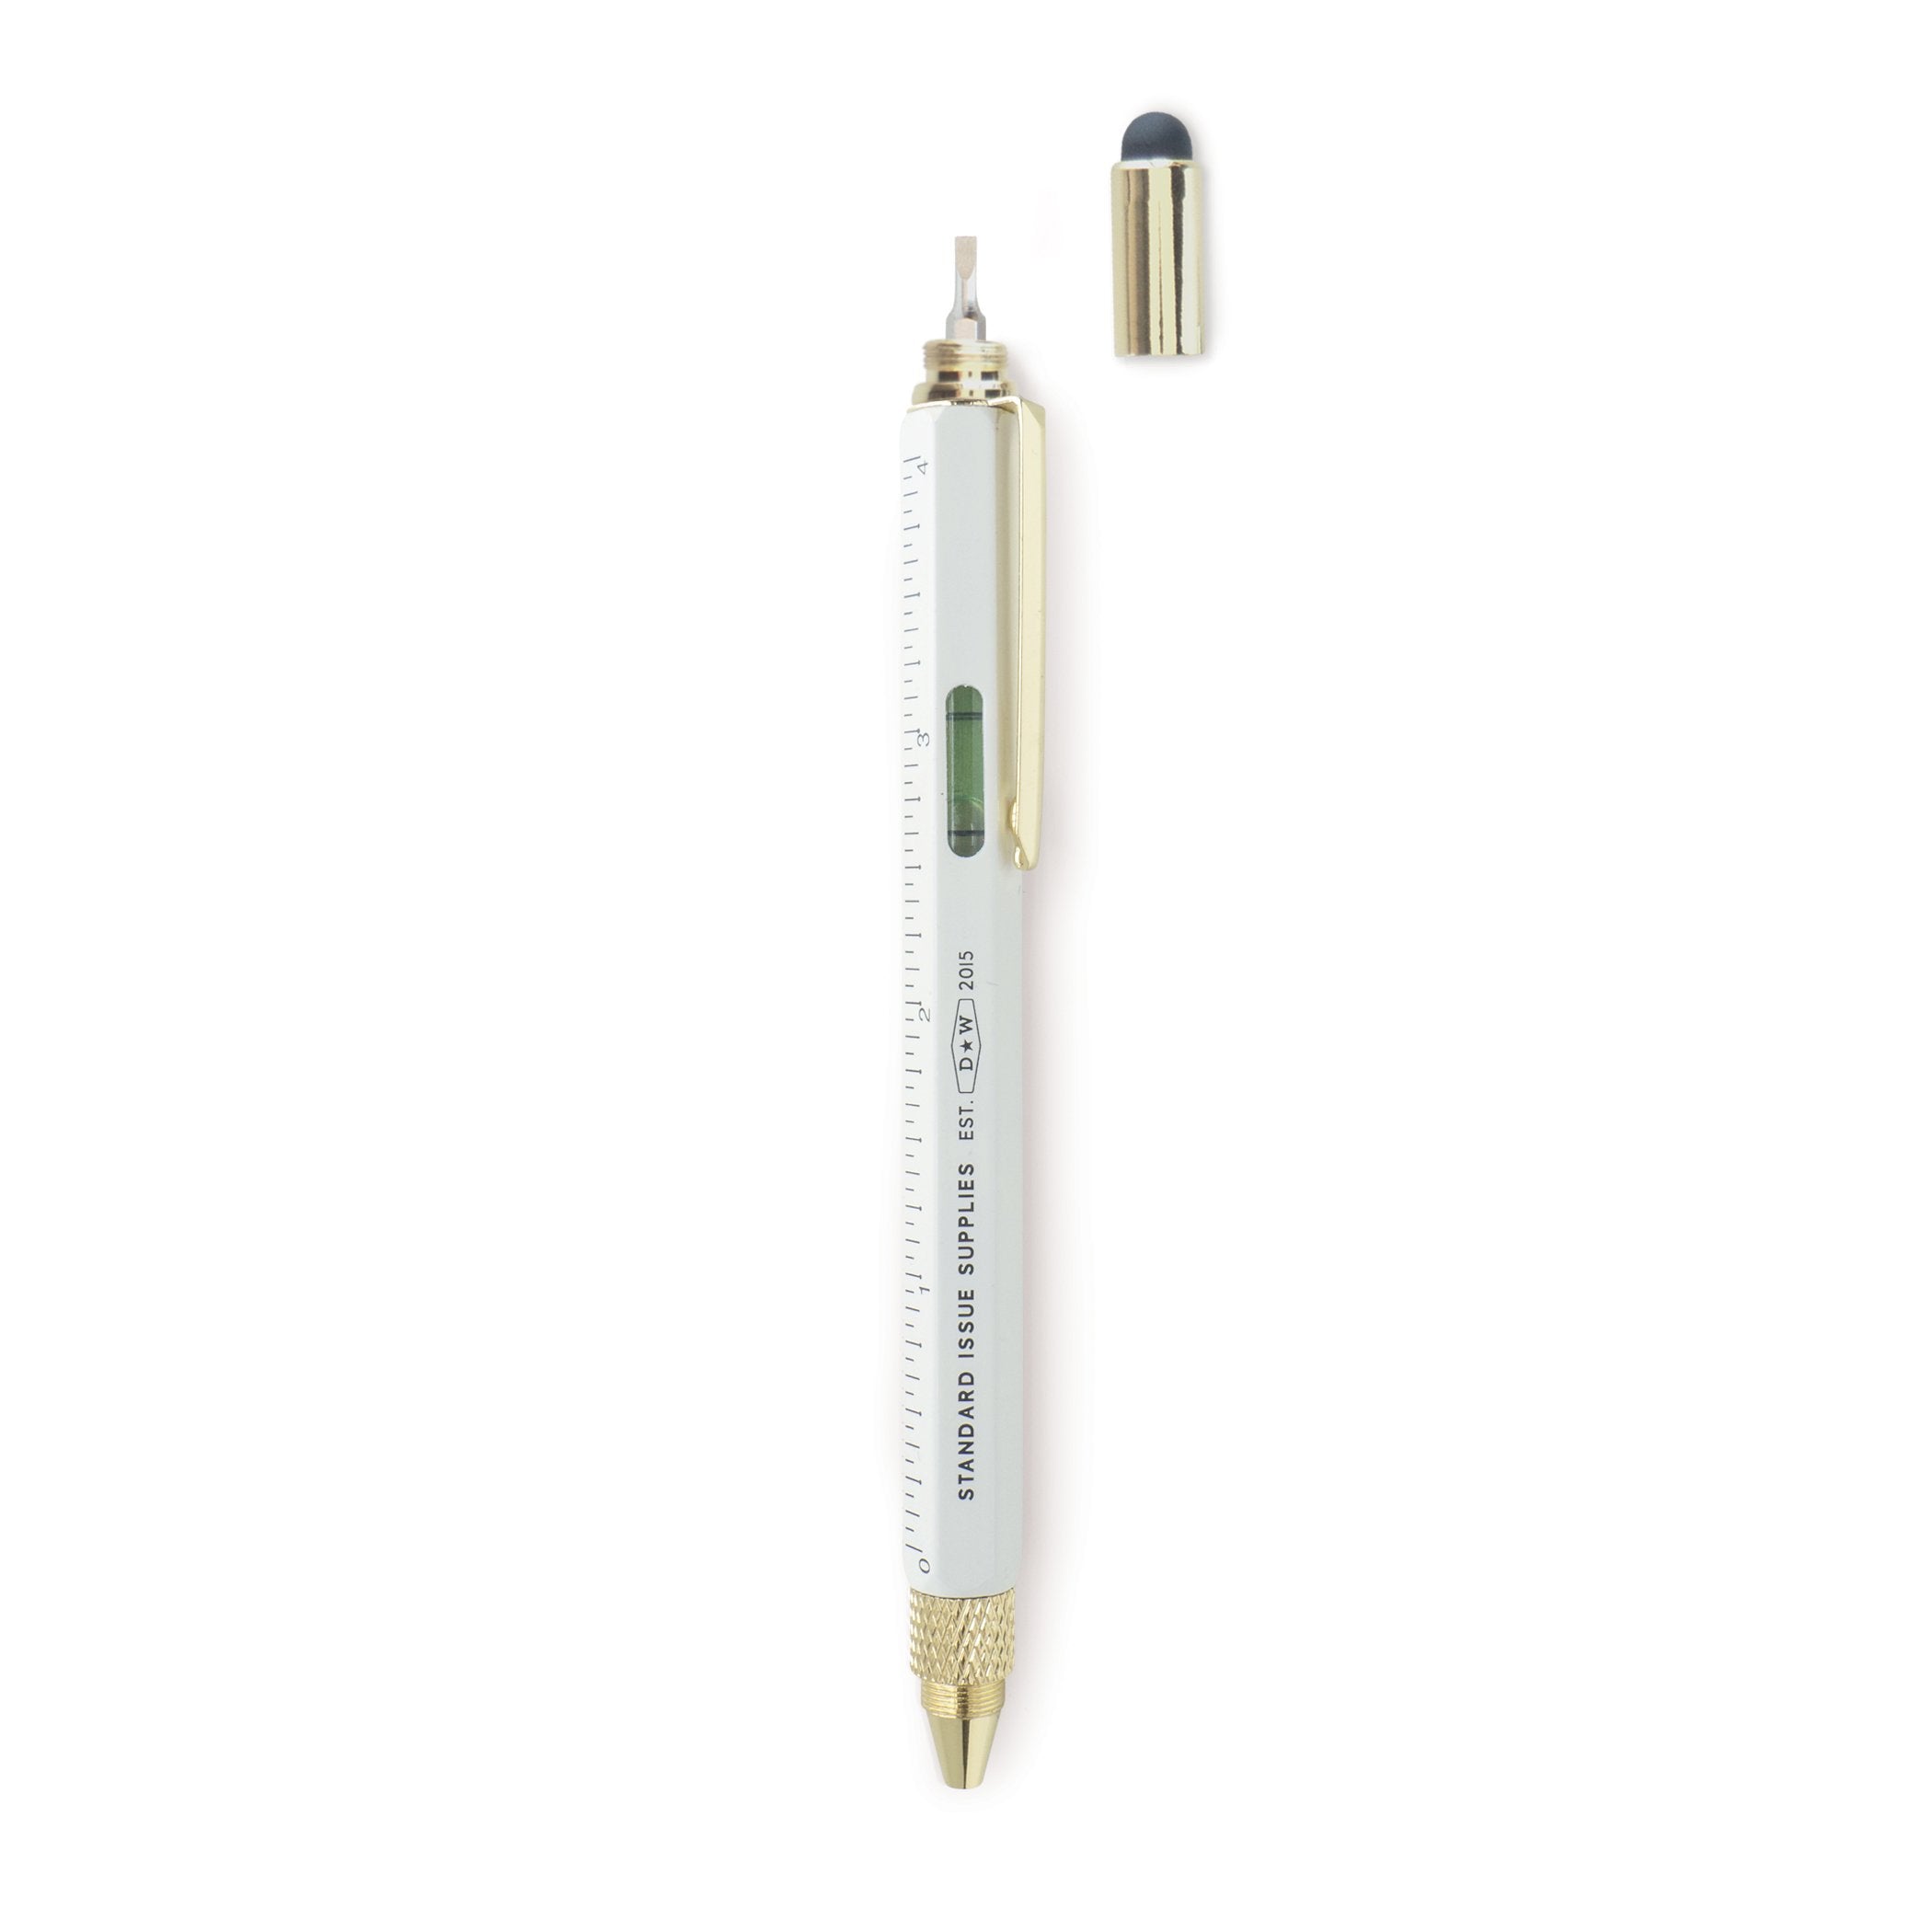 Pix Multi Tool - Standard Issue Tool Pen - Cream | DesignWorks Ink image4